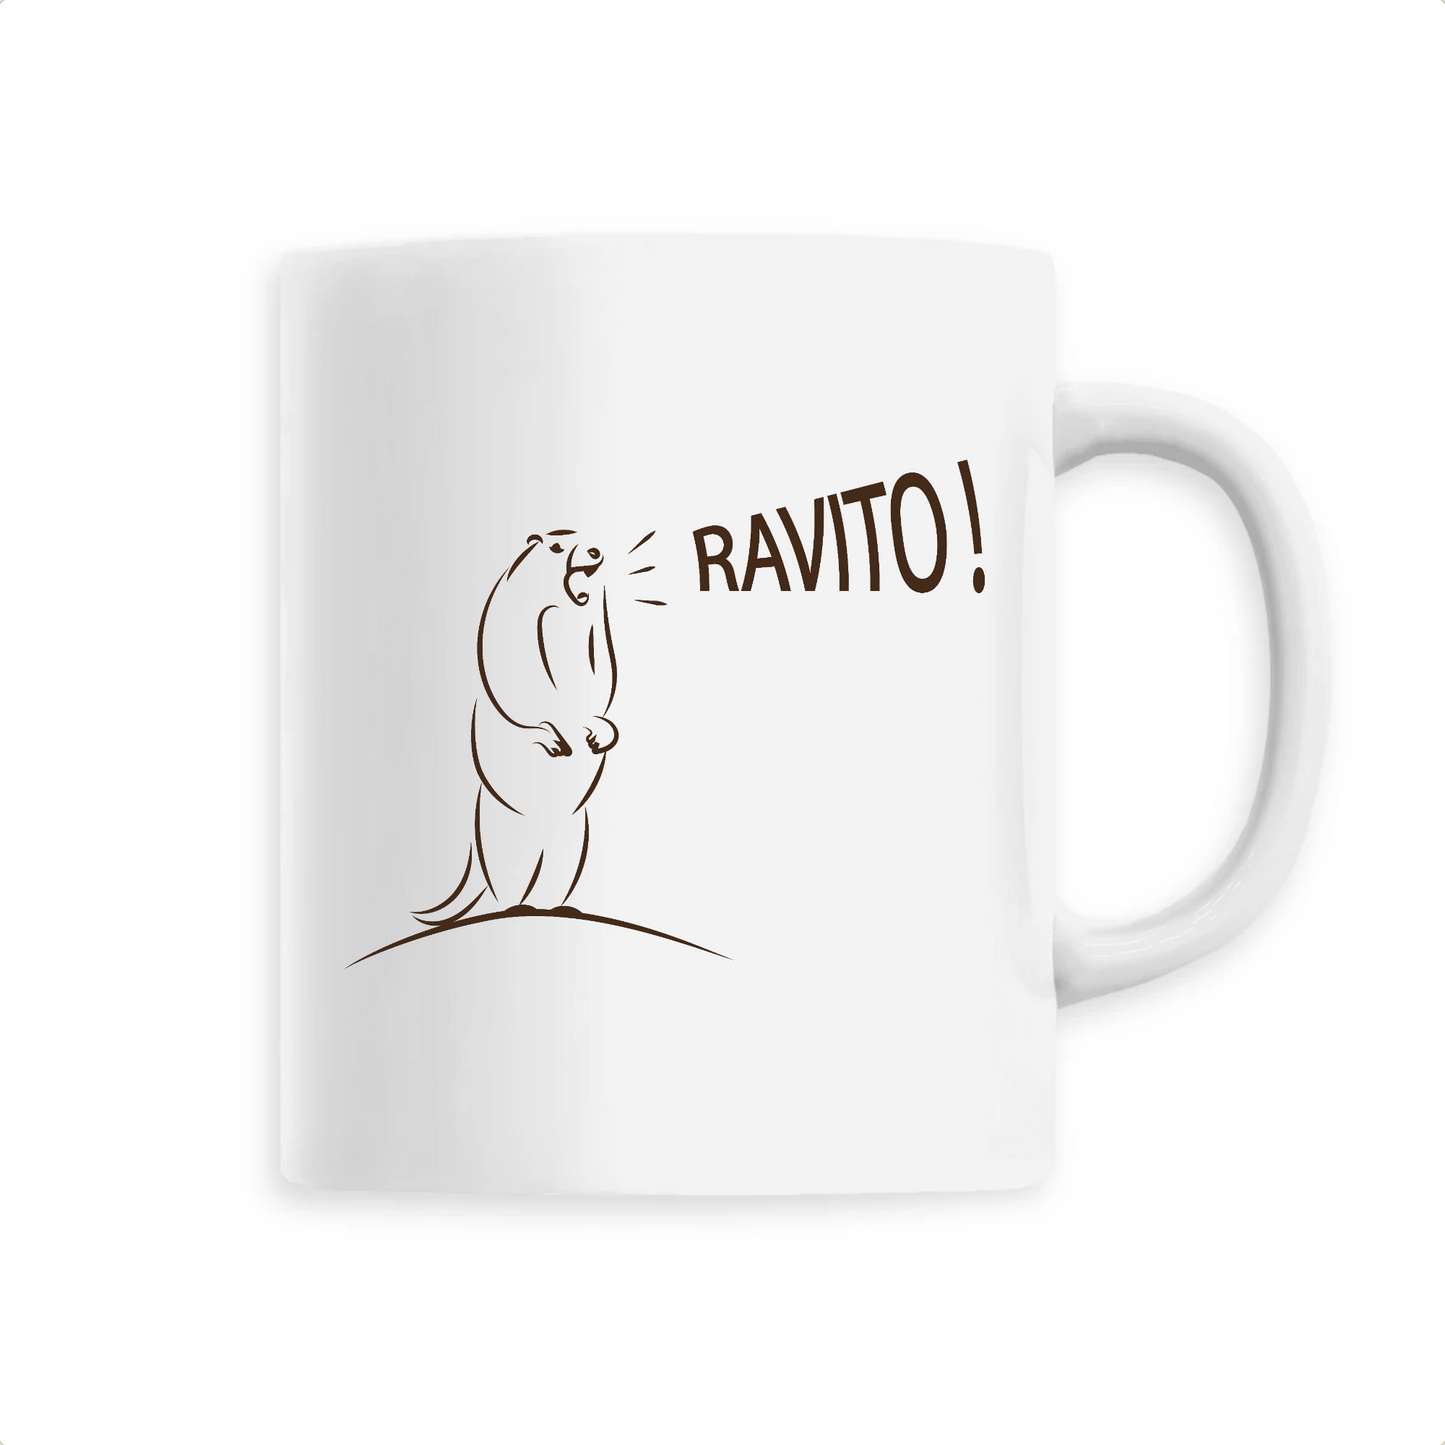 Mug en céramique avec marmotte criant "Ravito!" - Idée cadeau pour les amateurs de courses - Blanc